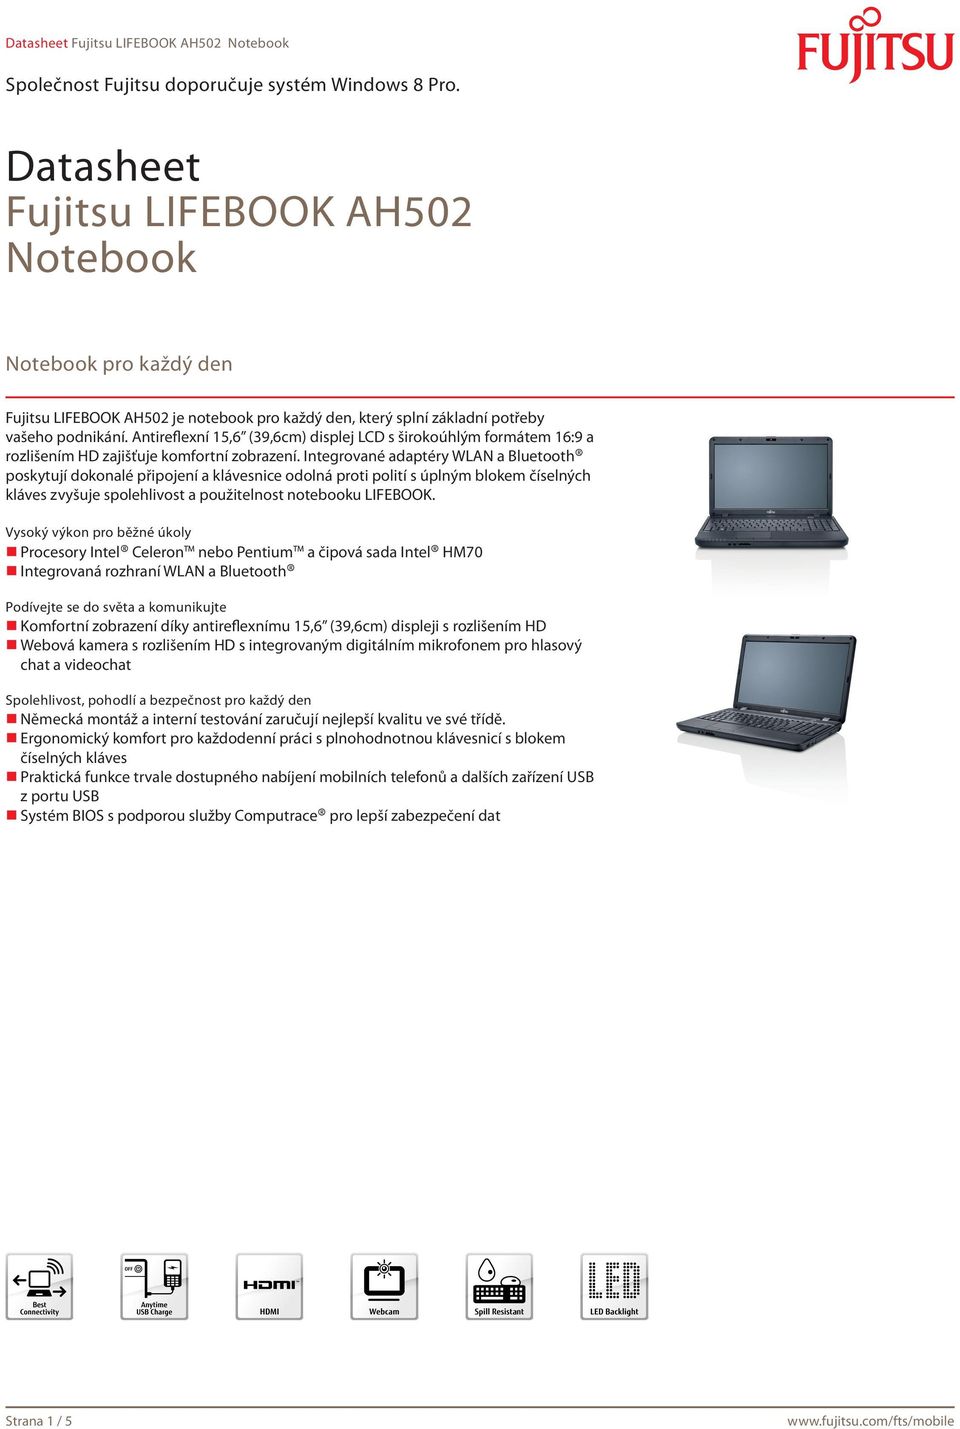 Integrované adaptéry WLAN a Bluetooth poskytují dokonalé připojení a klávesnice odolná proti polití s úplným blokem číselných kláves zvyšuje spolehlivost a použitelnost notebooku LIFEBOOK.